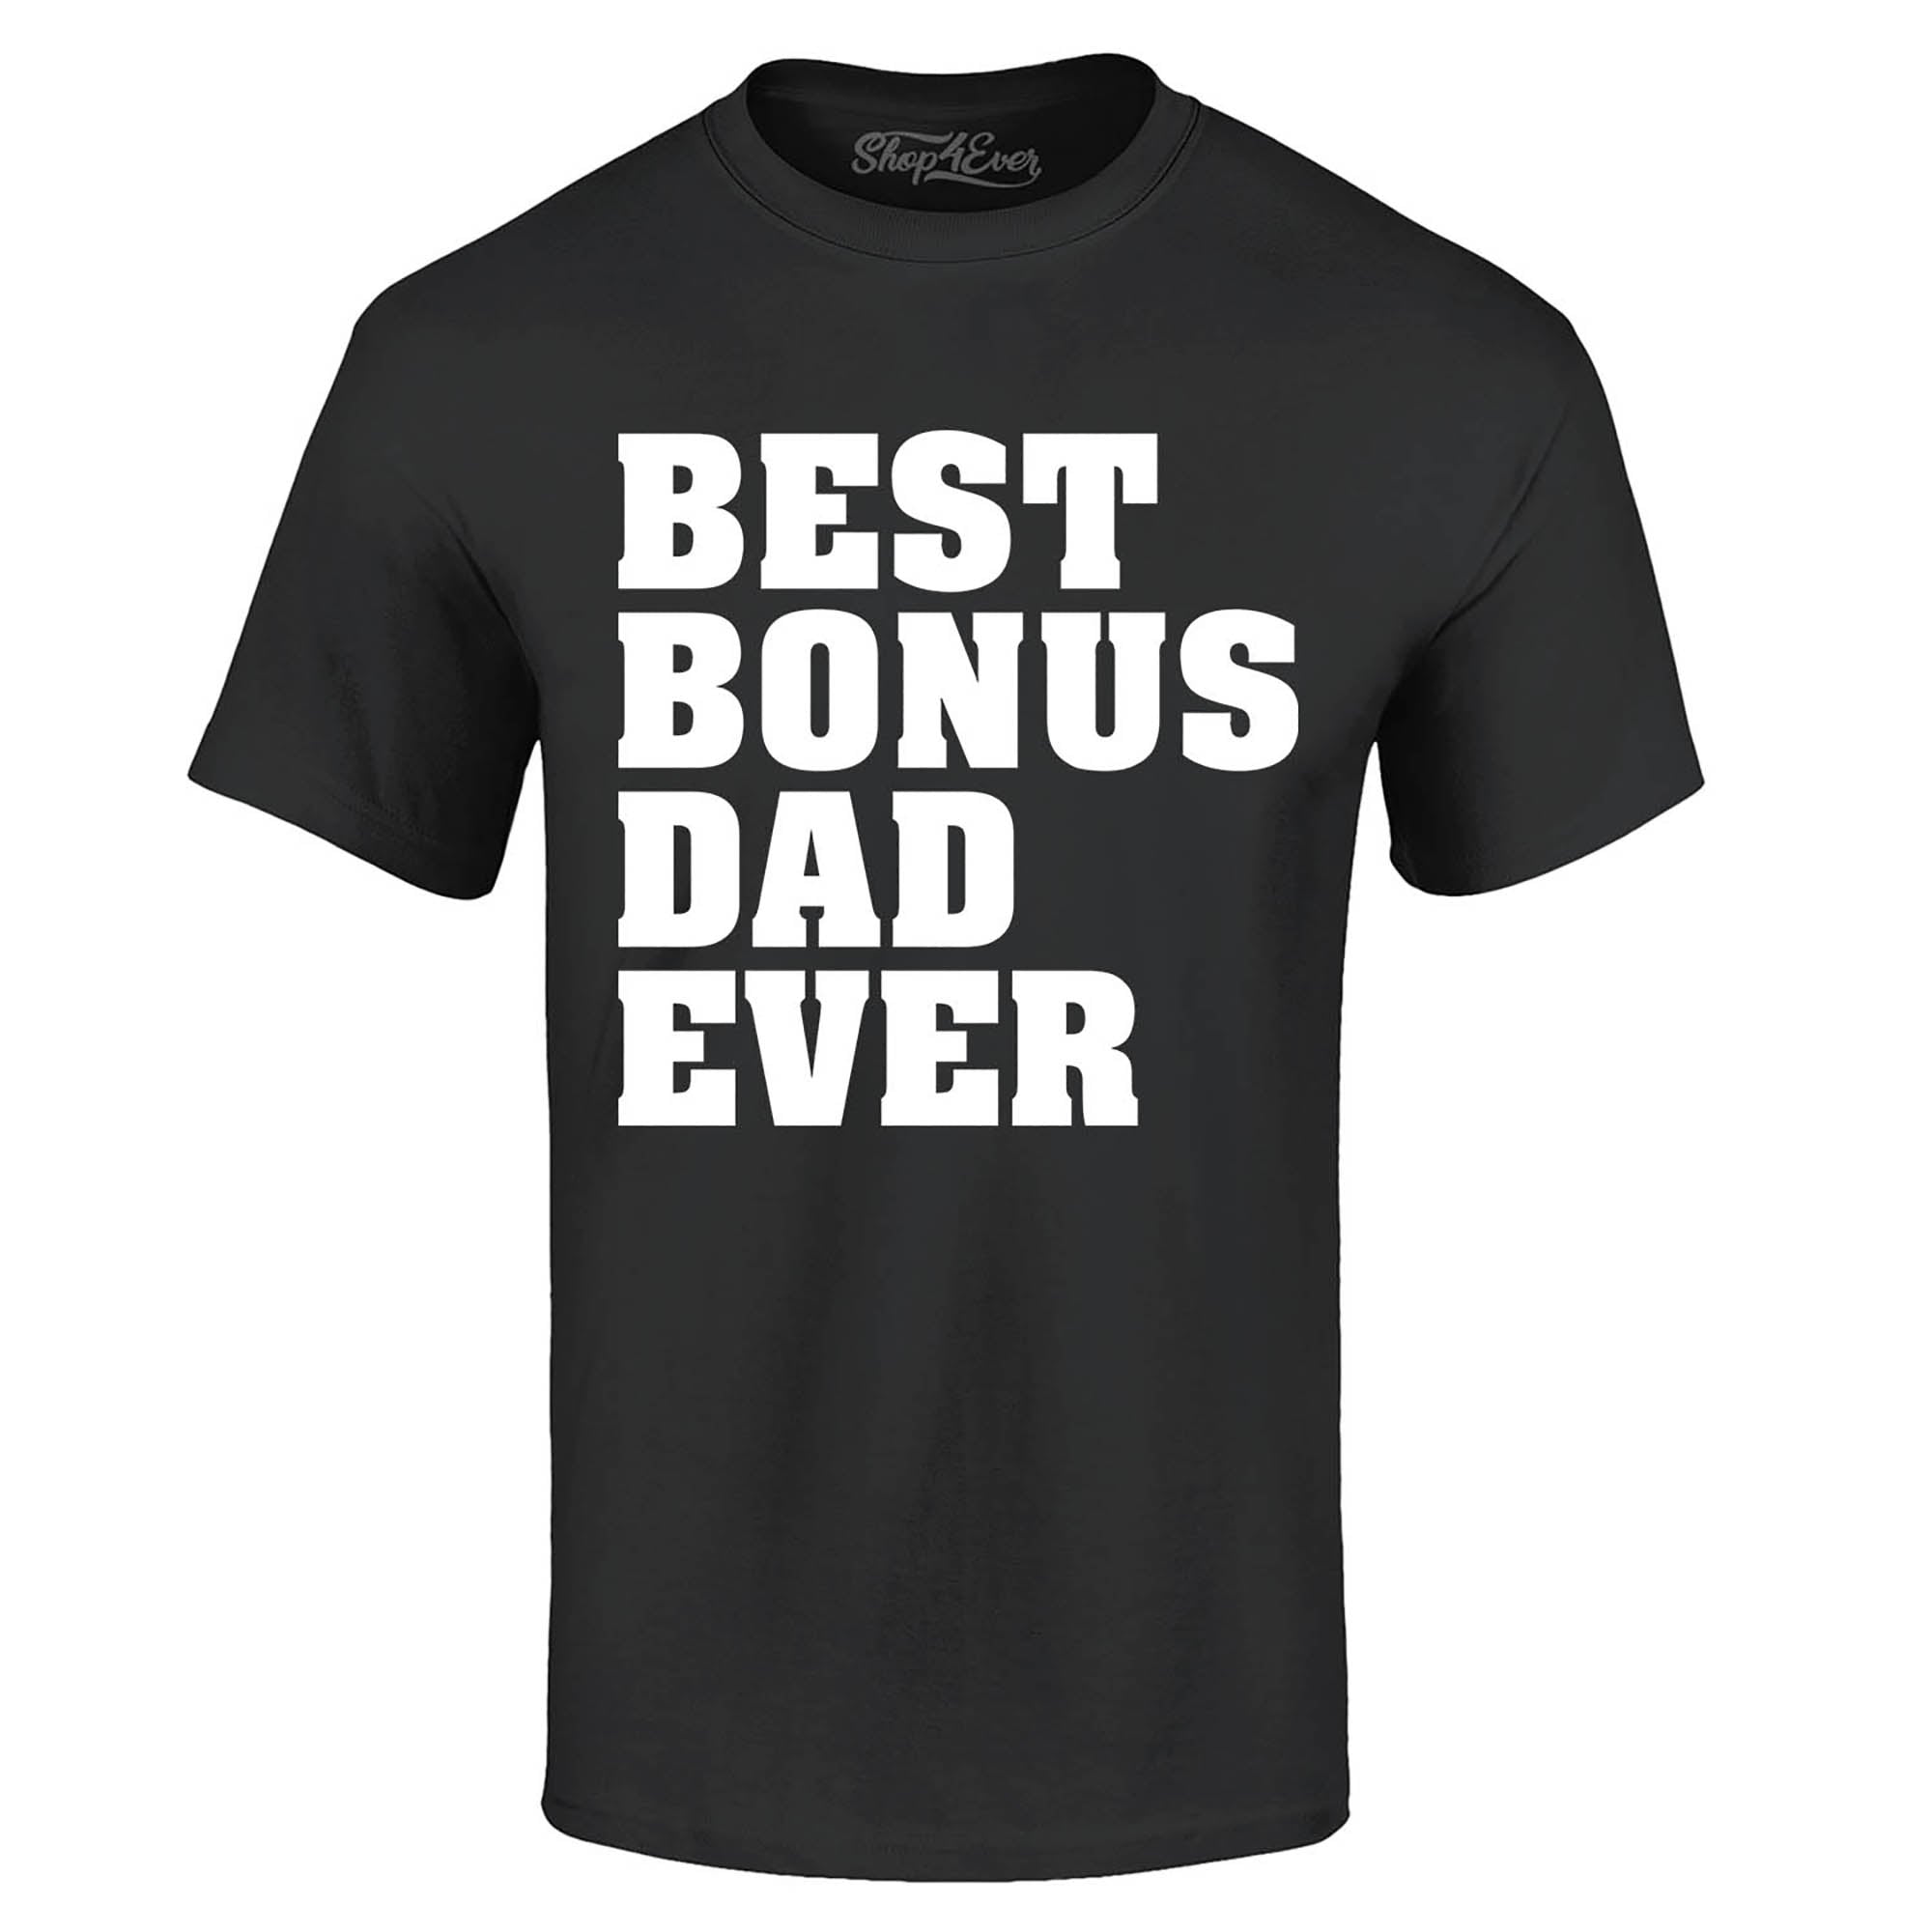 Best Bonus Dad Ever T-Shirt